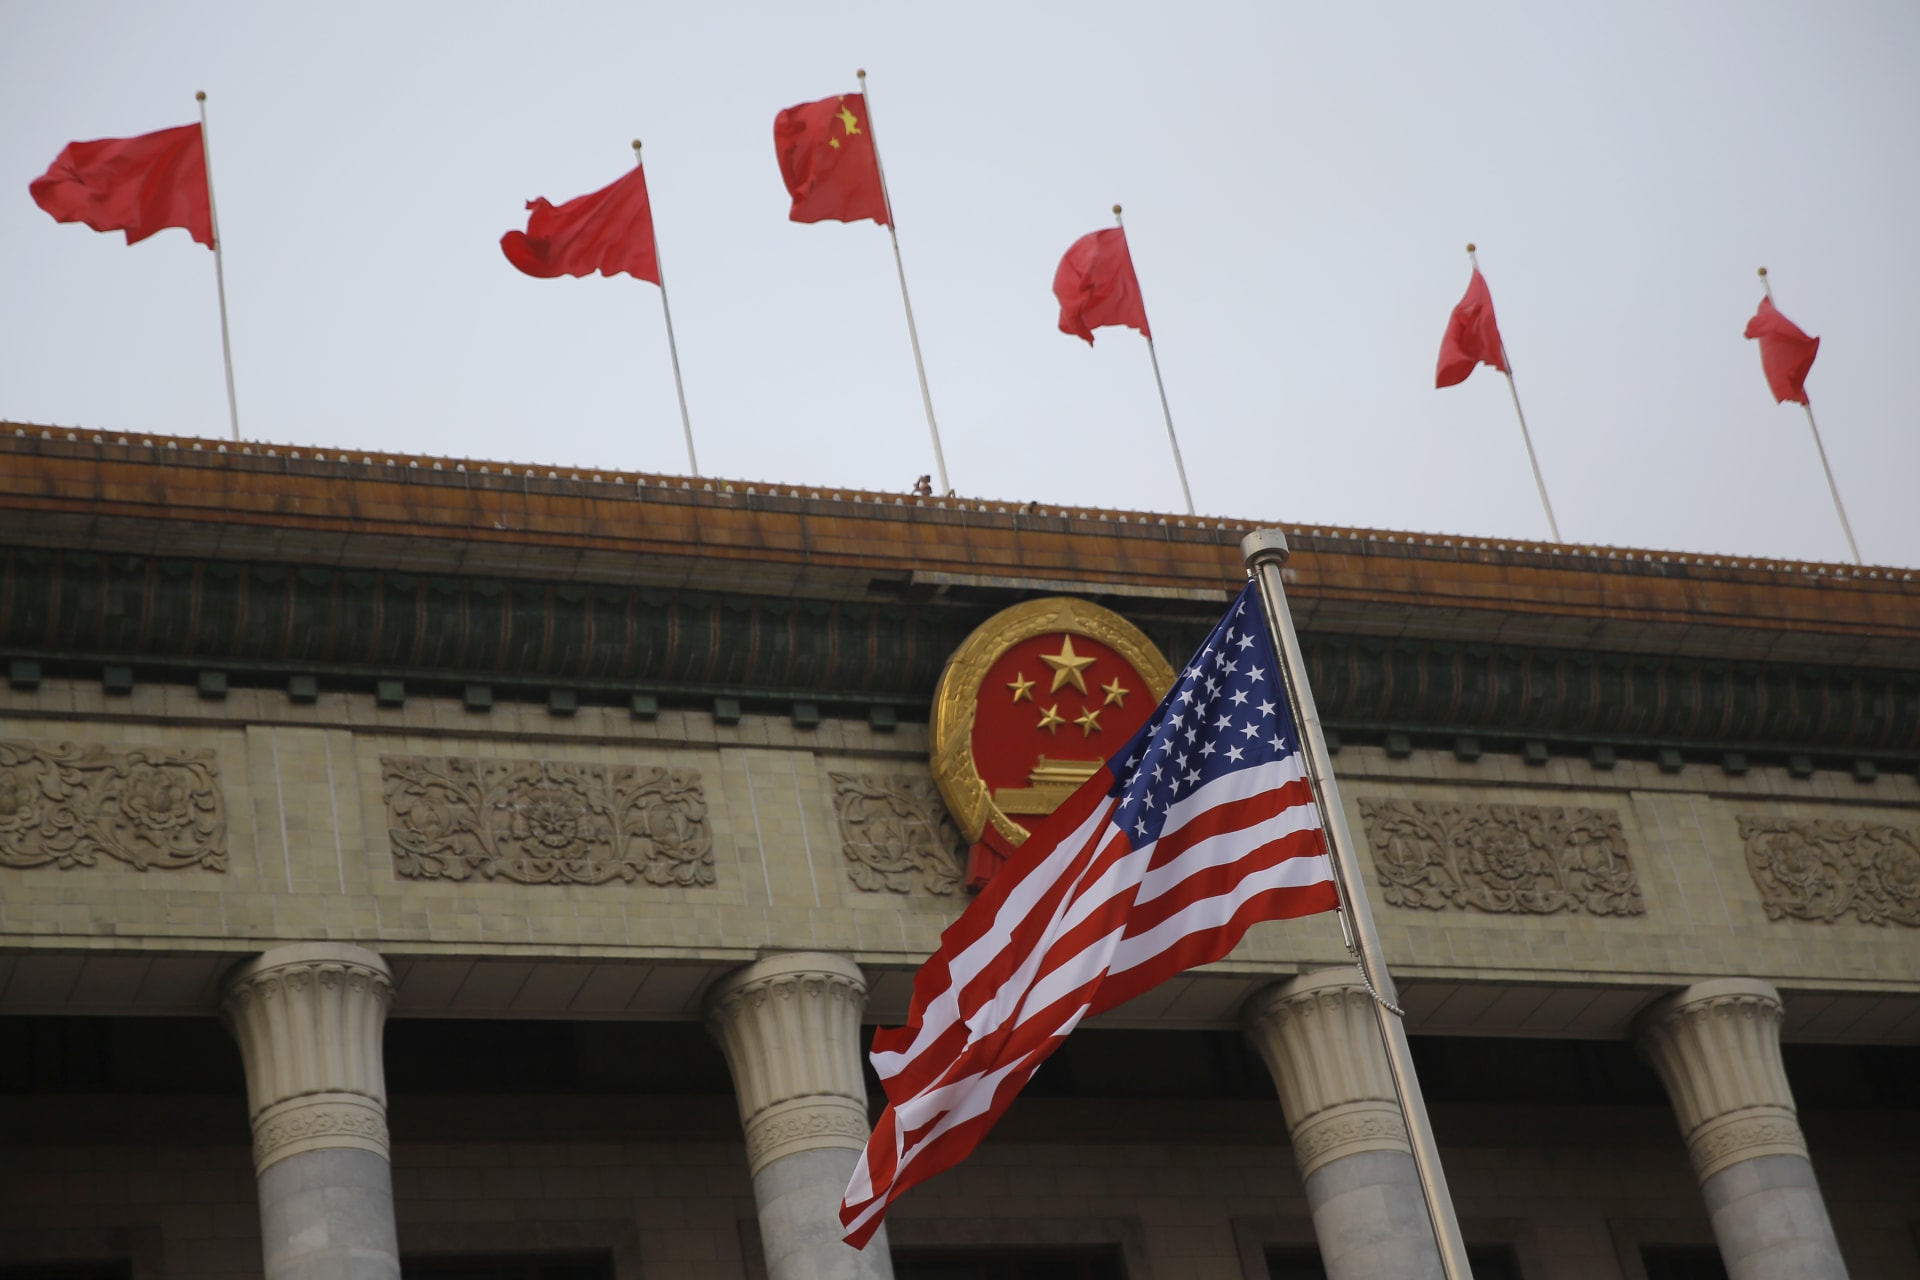 الصين تعلن القبض على مواطن يعمل في مؤسسة عسكرية بتهمة "التجسس" لصالح أمريكا